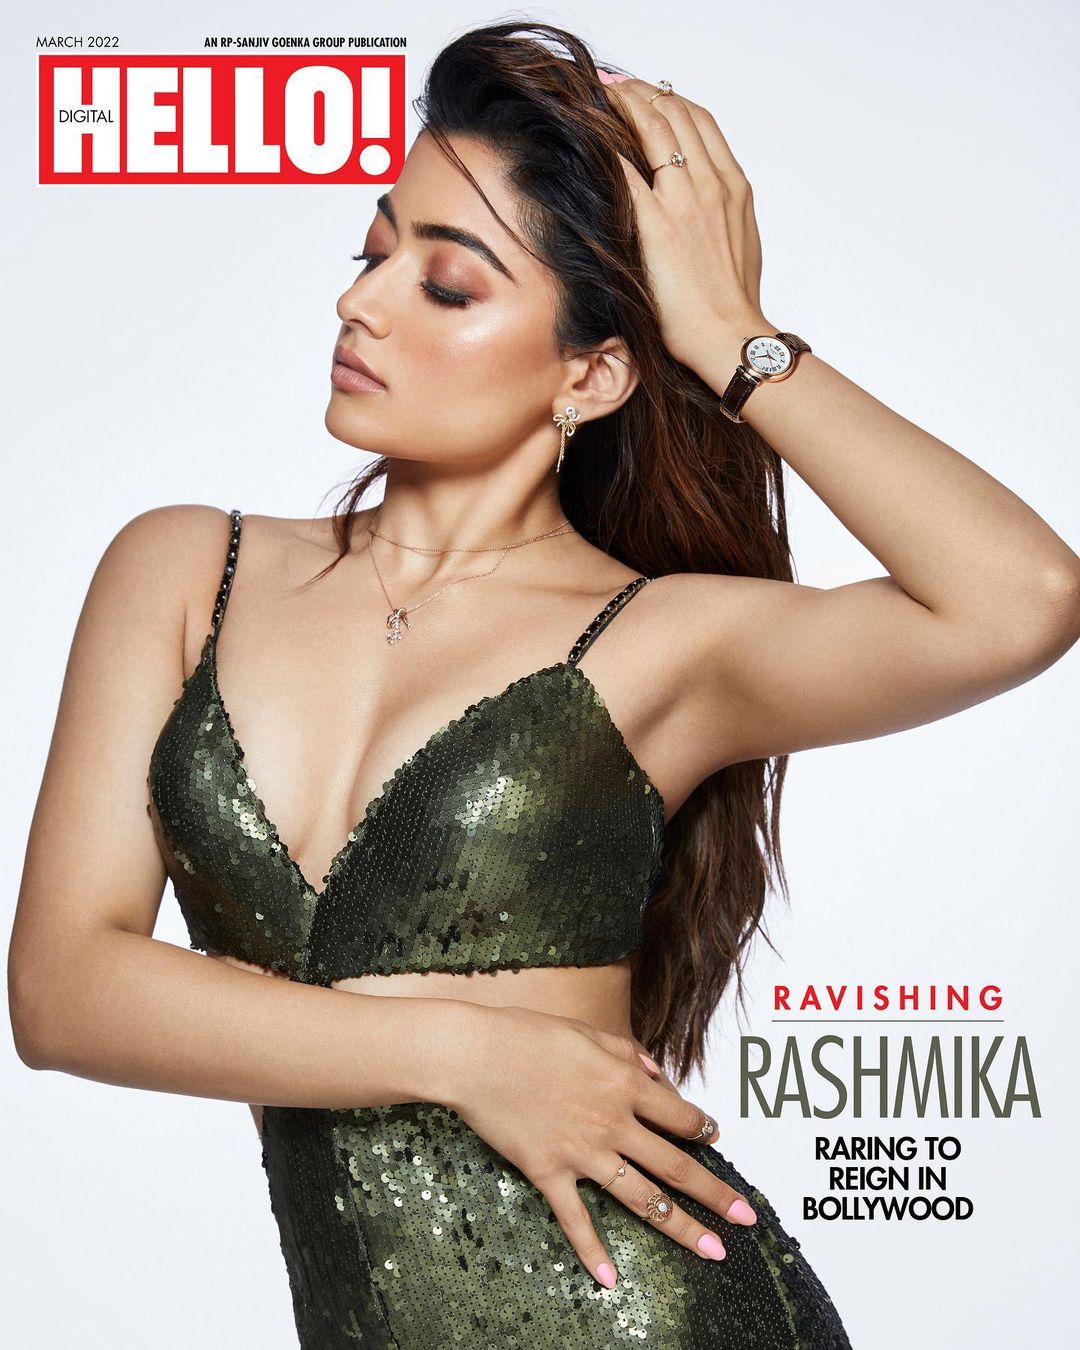 Rashmika's glamorous look goes viral